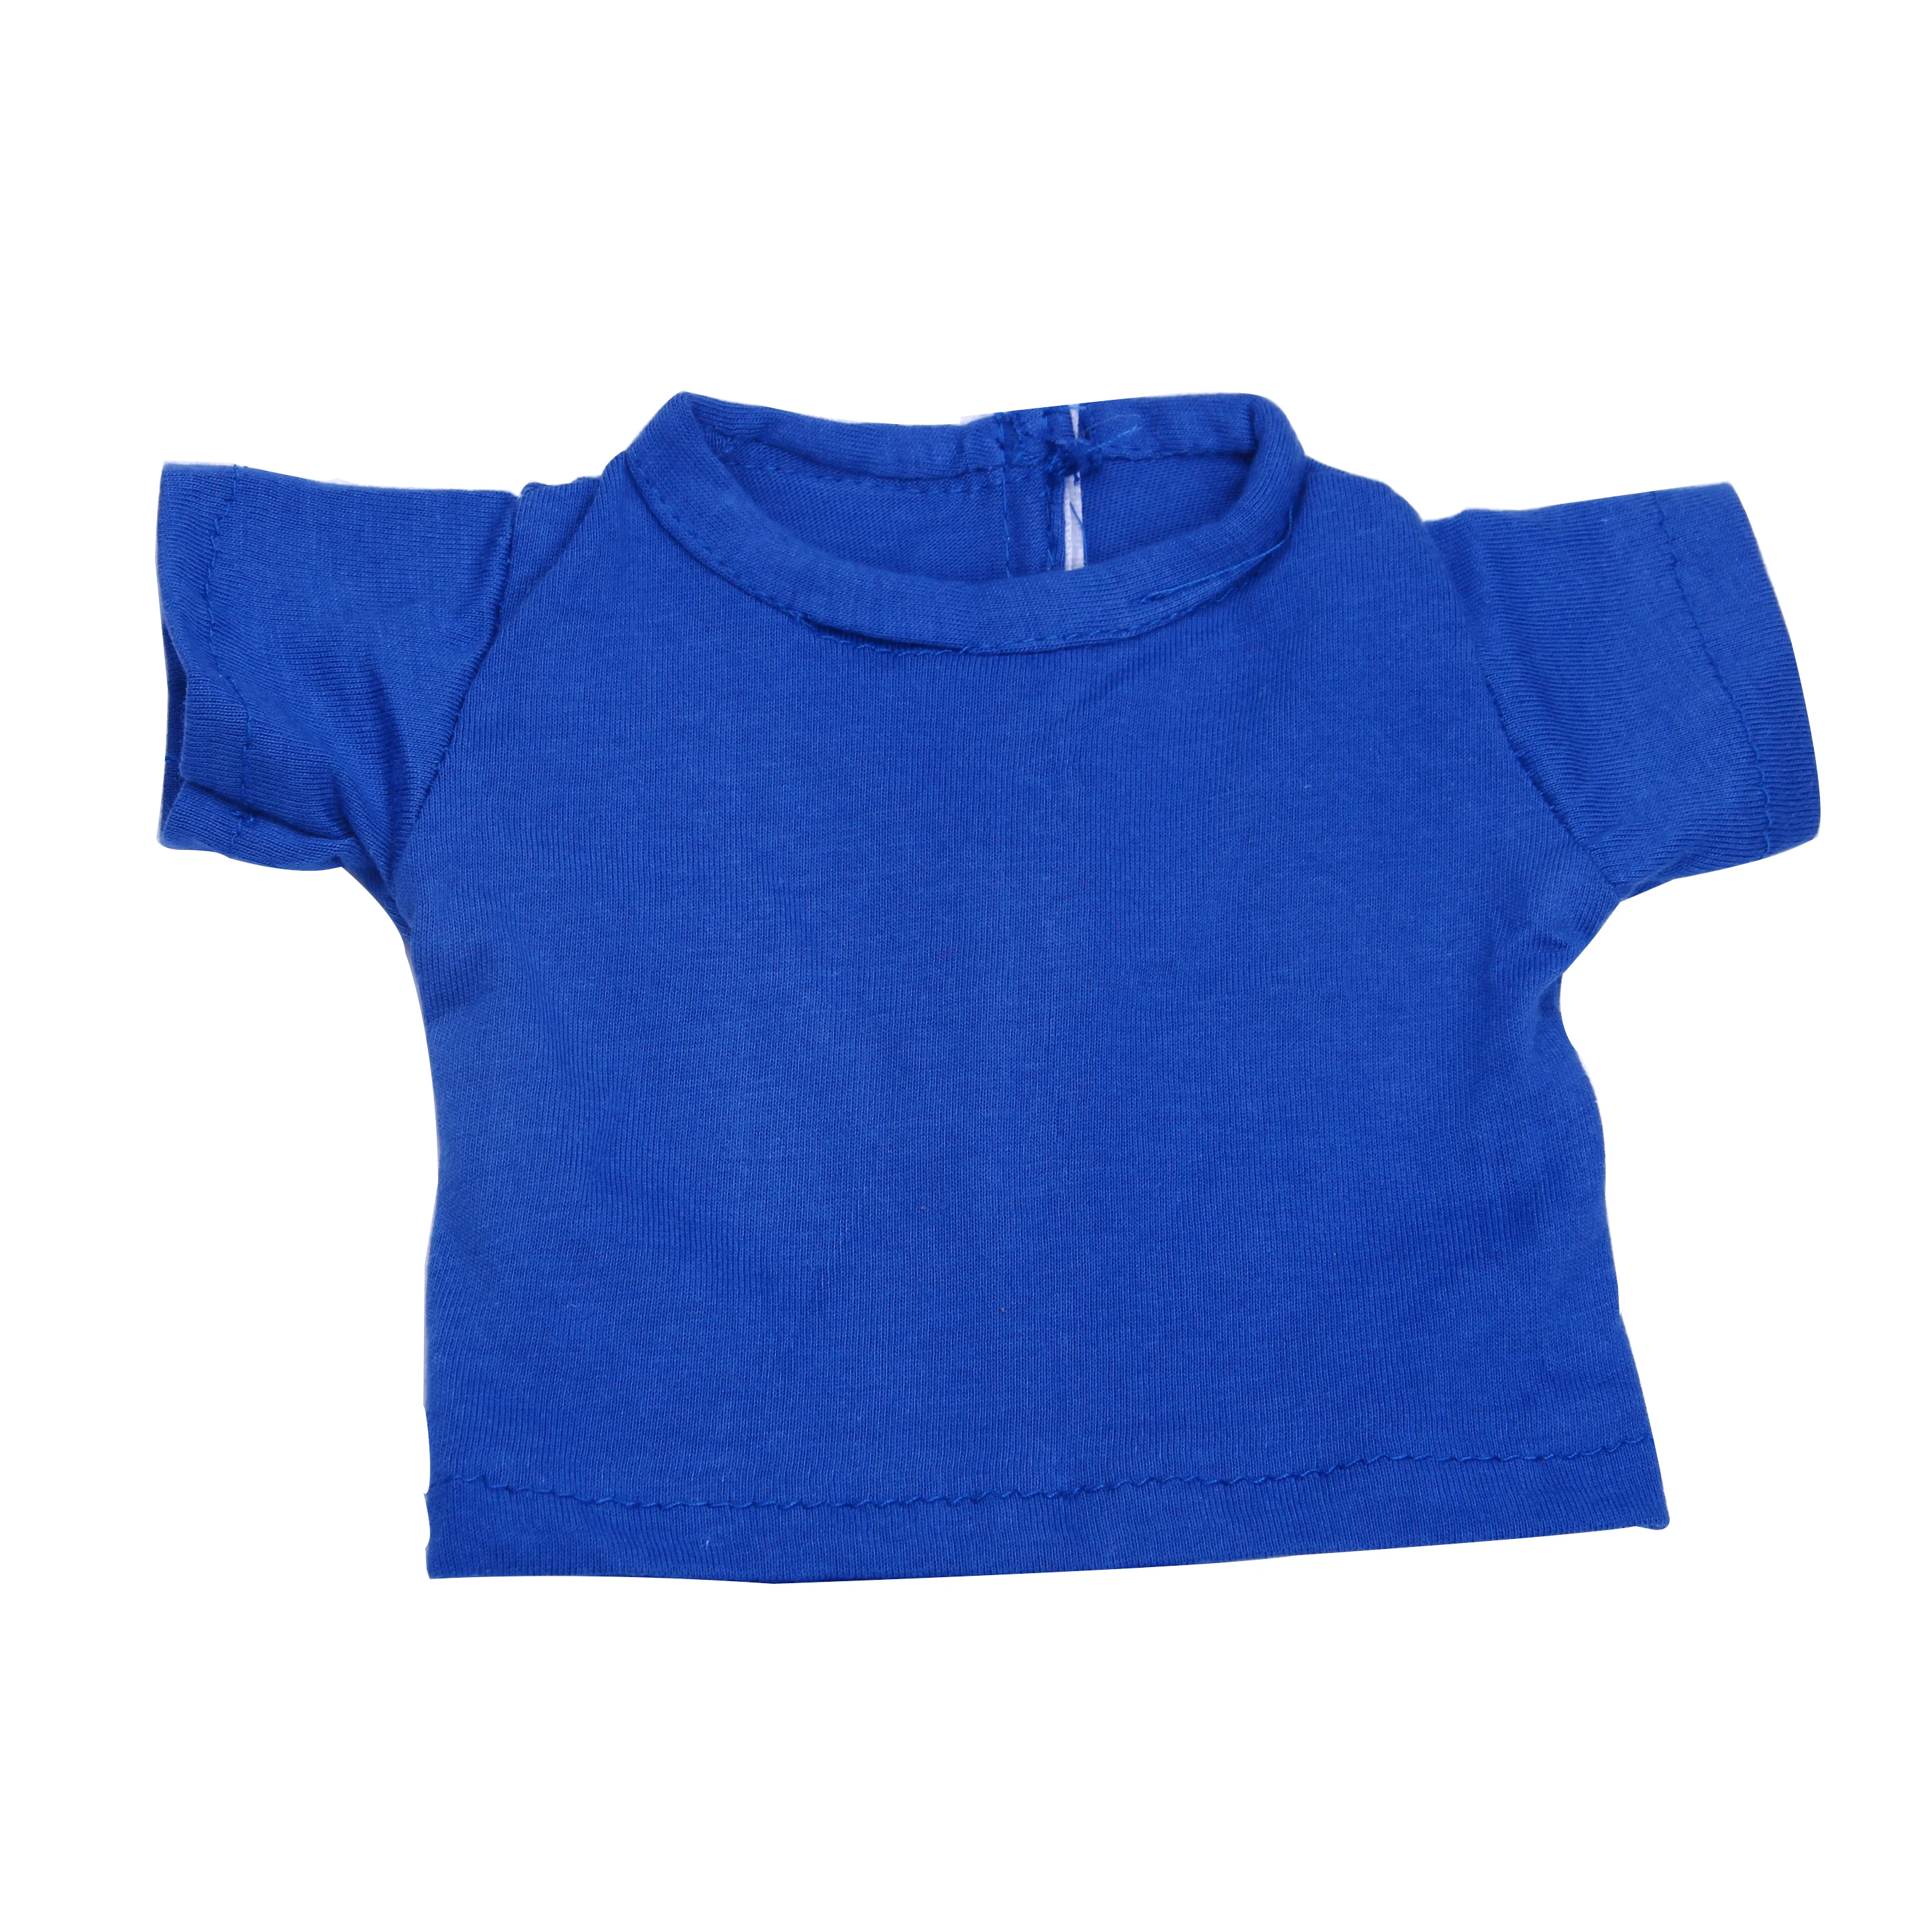 LUCKDOLLSolid цвет Женская футболка и трусики подходит 18 дюймов Американский 43 см Одежда для кукол аксессуары, игрушки для девочек, поколение, день рождения